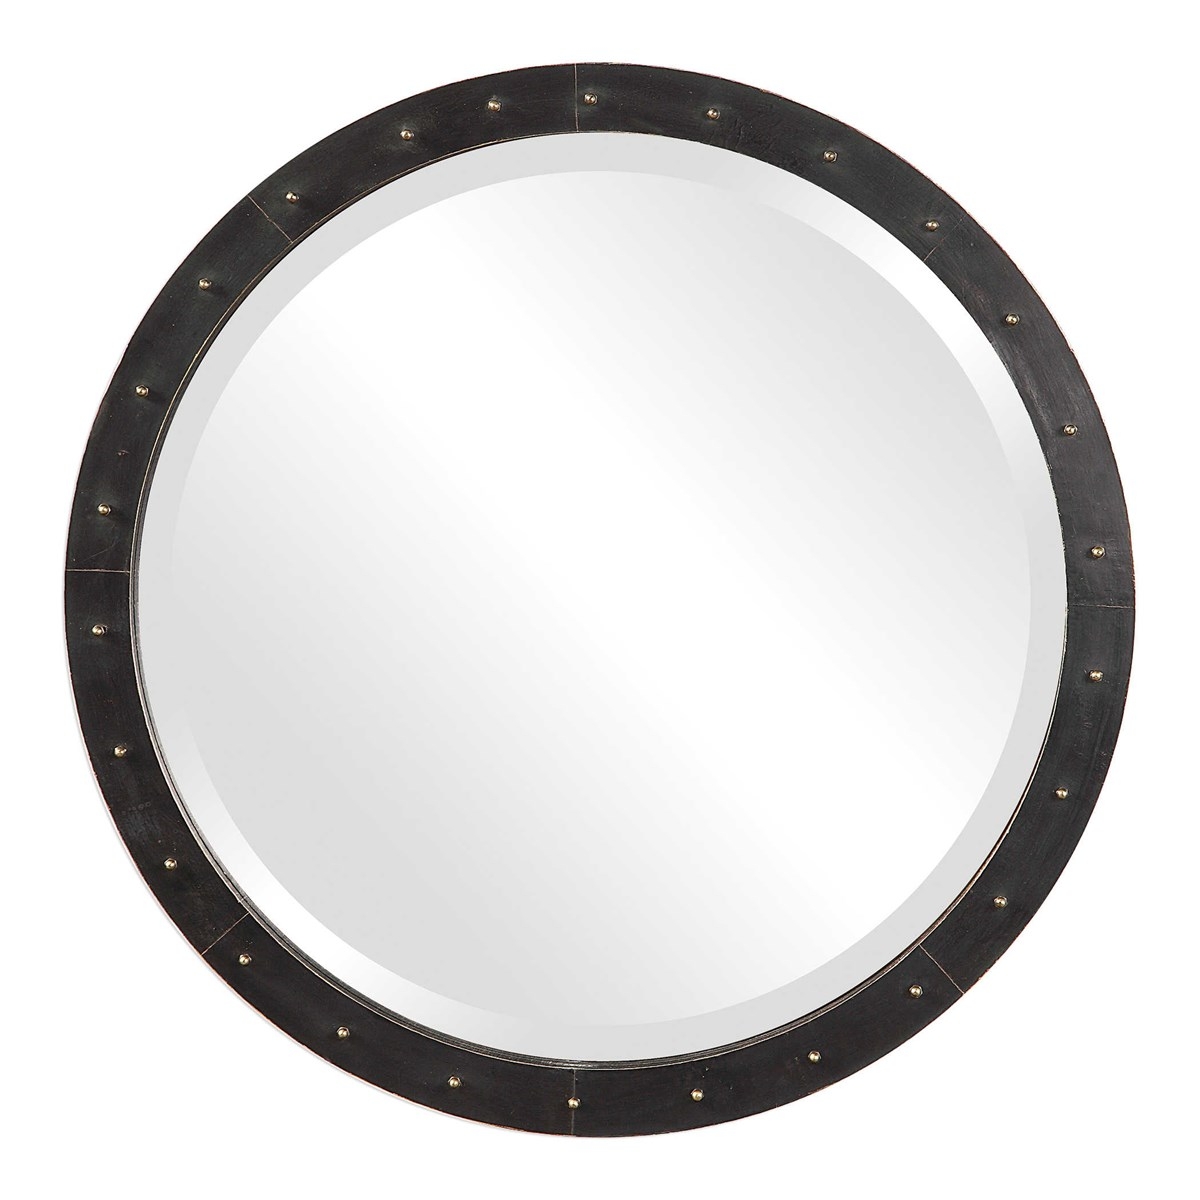 Beldon Round Industrial Mirror, Dark Bronze - Image 0